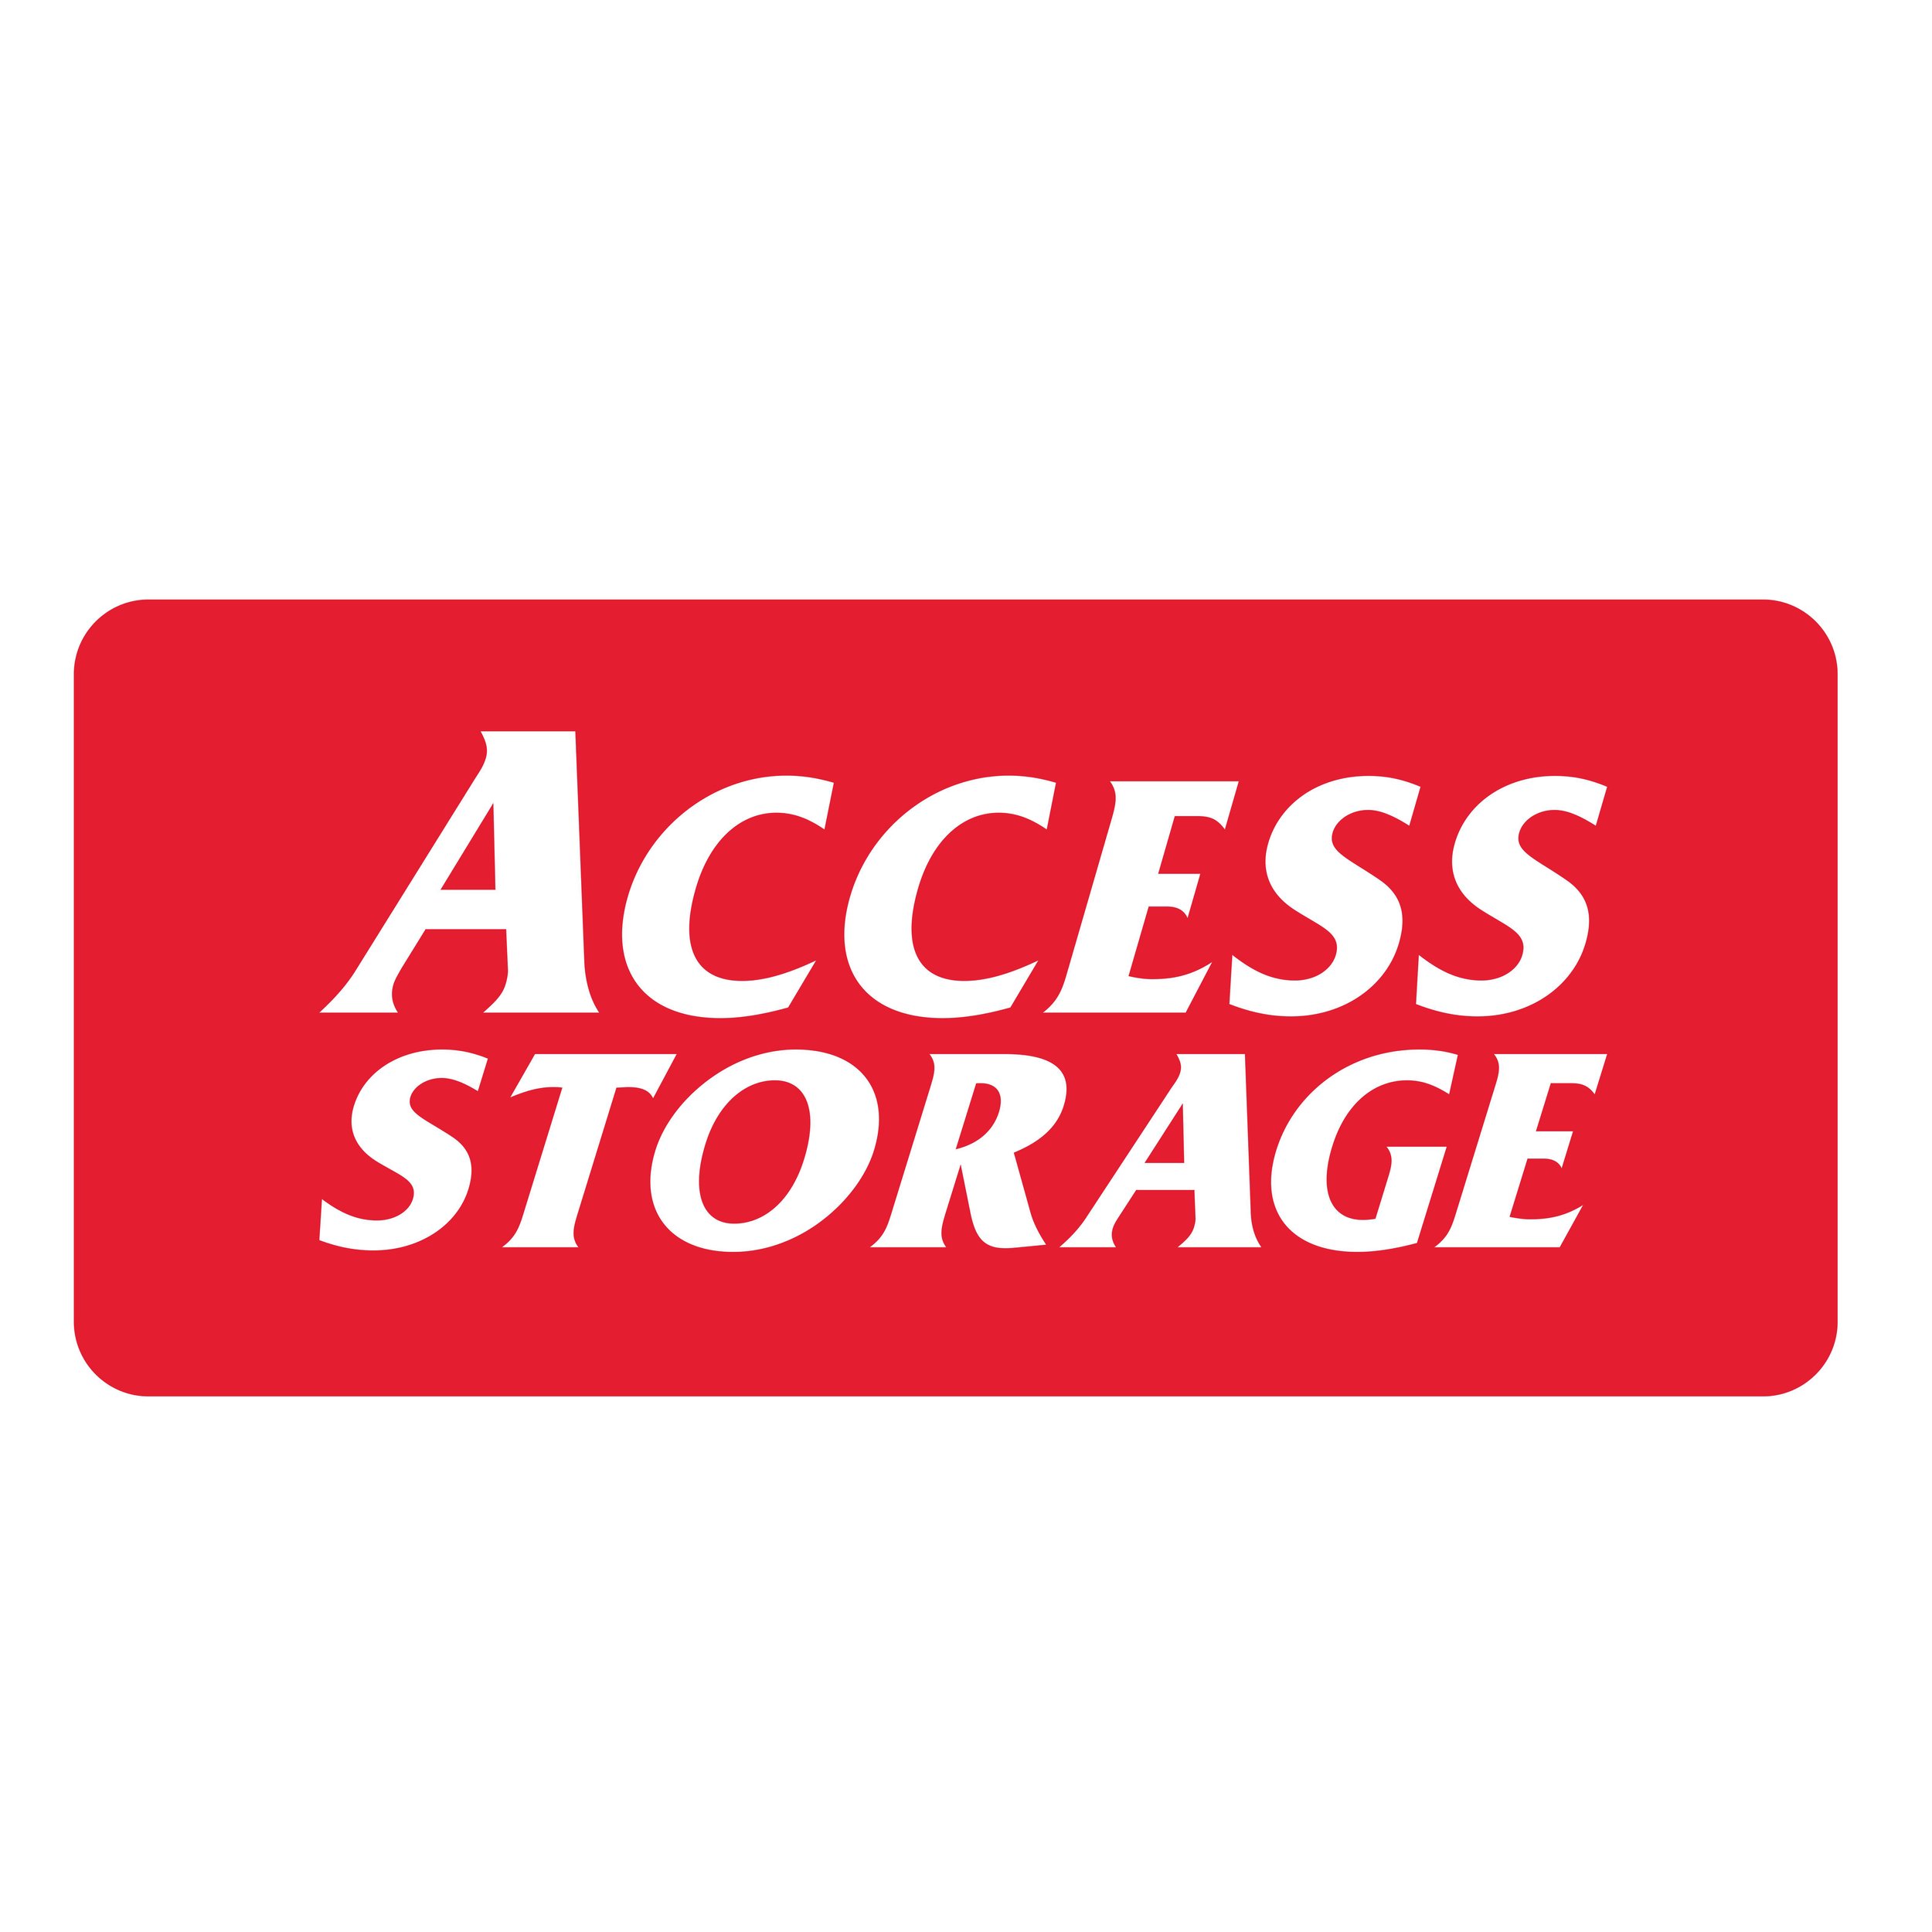 Access storage.jpg